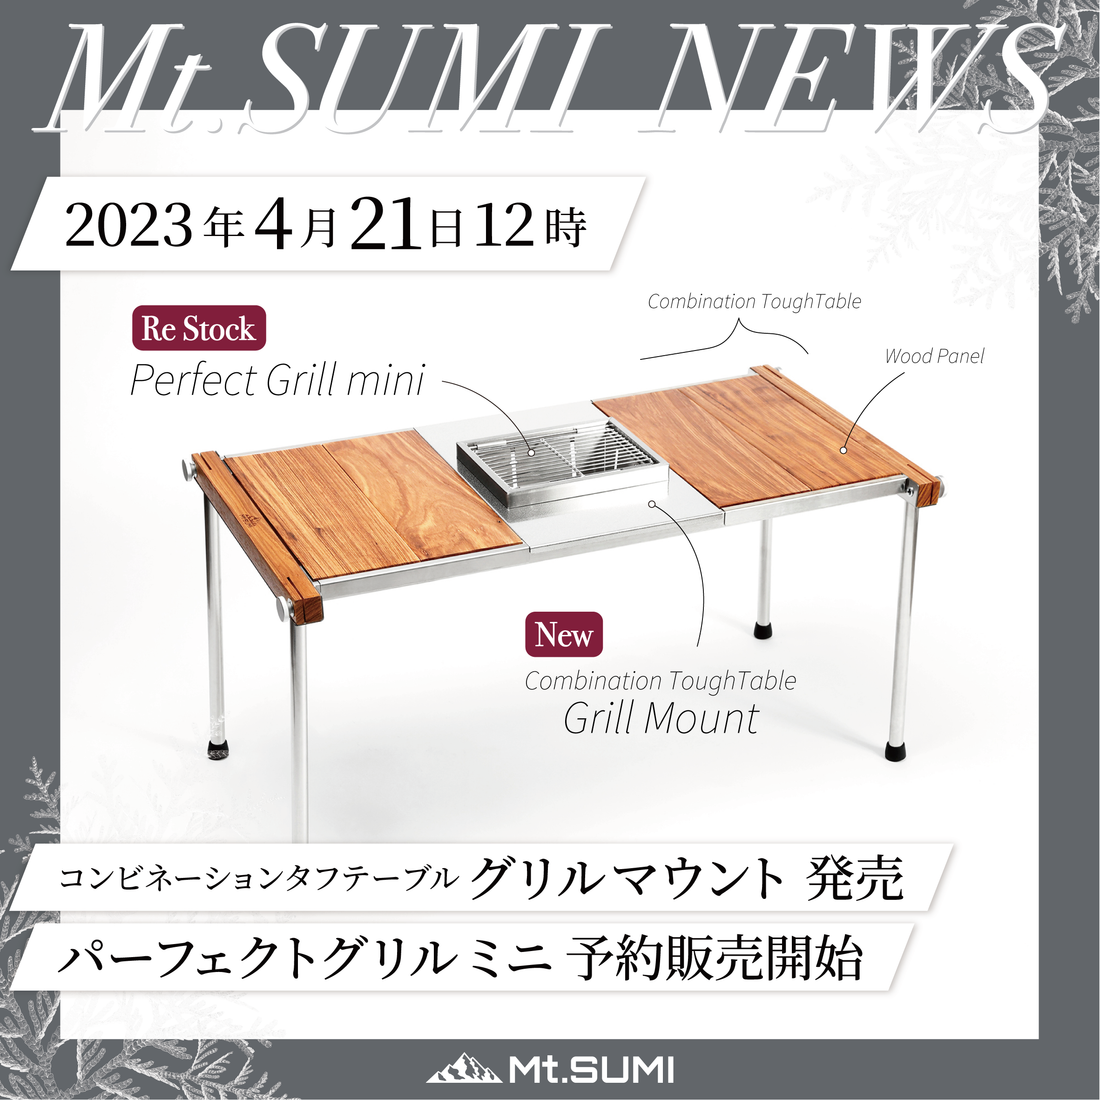 【製品情報】テーブルとグリルを一体化できる「グリルマウント」2023年4月21日発売